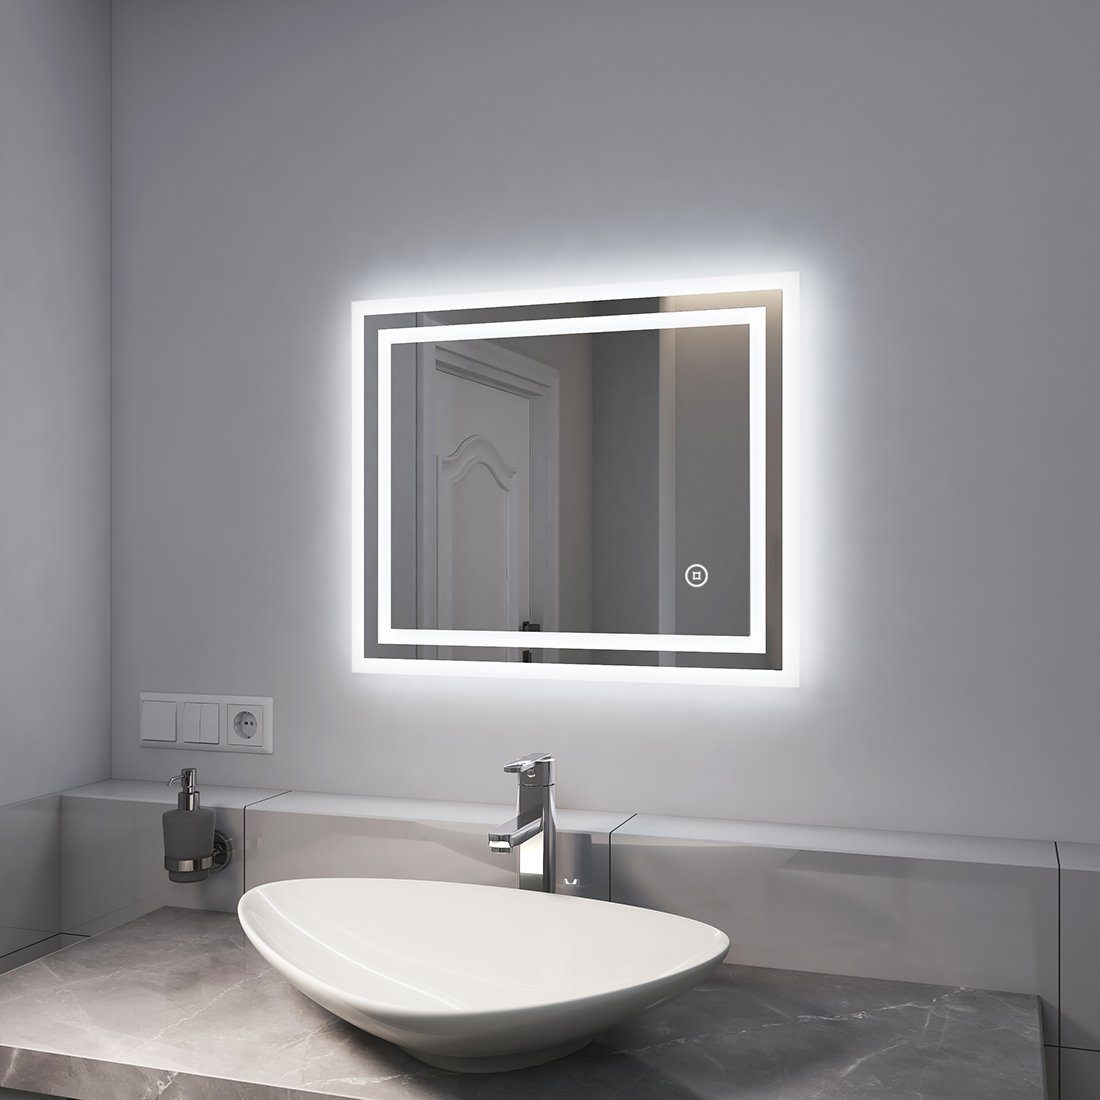 EMKE Badspiegel EMKE LED Badspiegel mit Beleuchtung Badezimmerspiegel, mit Touchschalter, Beschlagfrei, 6500K Kaltweiß Licht